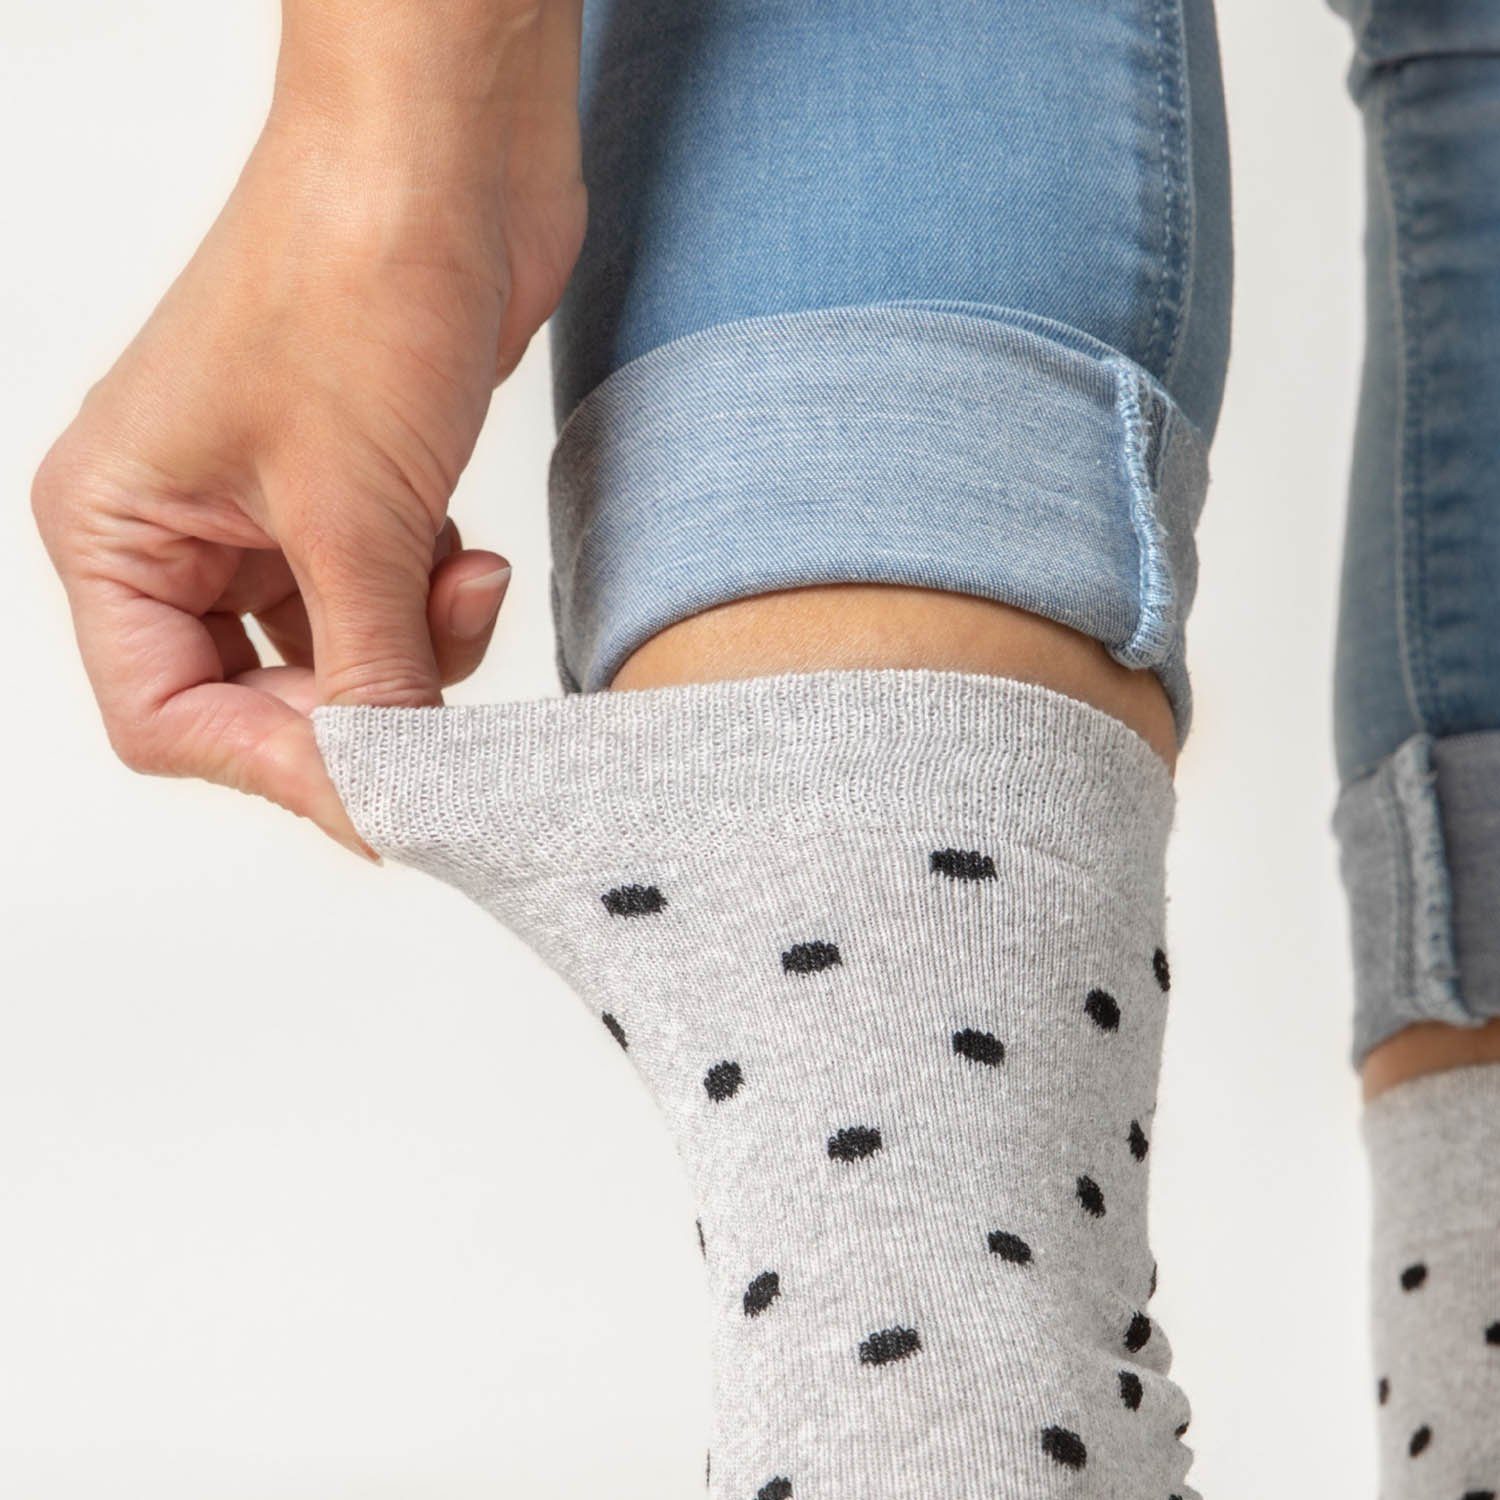 OCCULTO Basicsocken Damen Muster Socken Paar Milka) 10 10BlkRed (10-Paar) (Modell